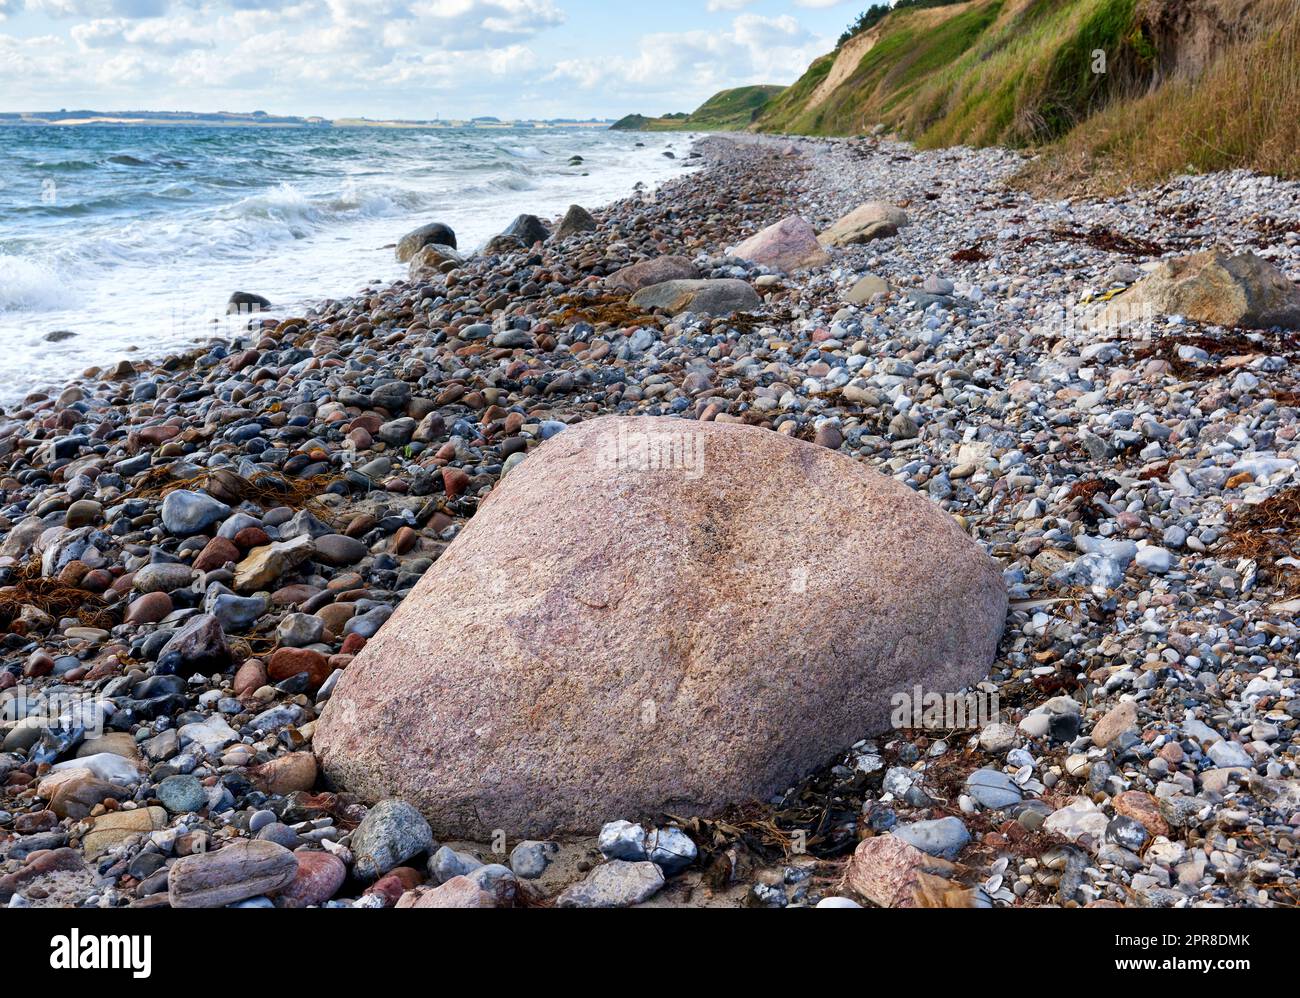 Küste von Kattegat - Helgenaes, Dänemark. Meereswellen, die auf leere Steine am Strand waschten. Ruhiges, friedliches Paradies der Sommerlandschaft und des Himmels für einen entspannten Urlaub im Ausland oder einen Urlaub auf Reisen Stockfoto